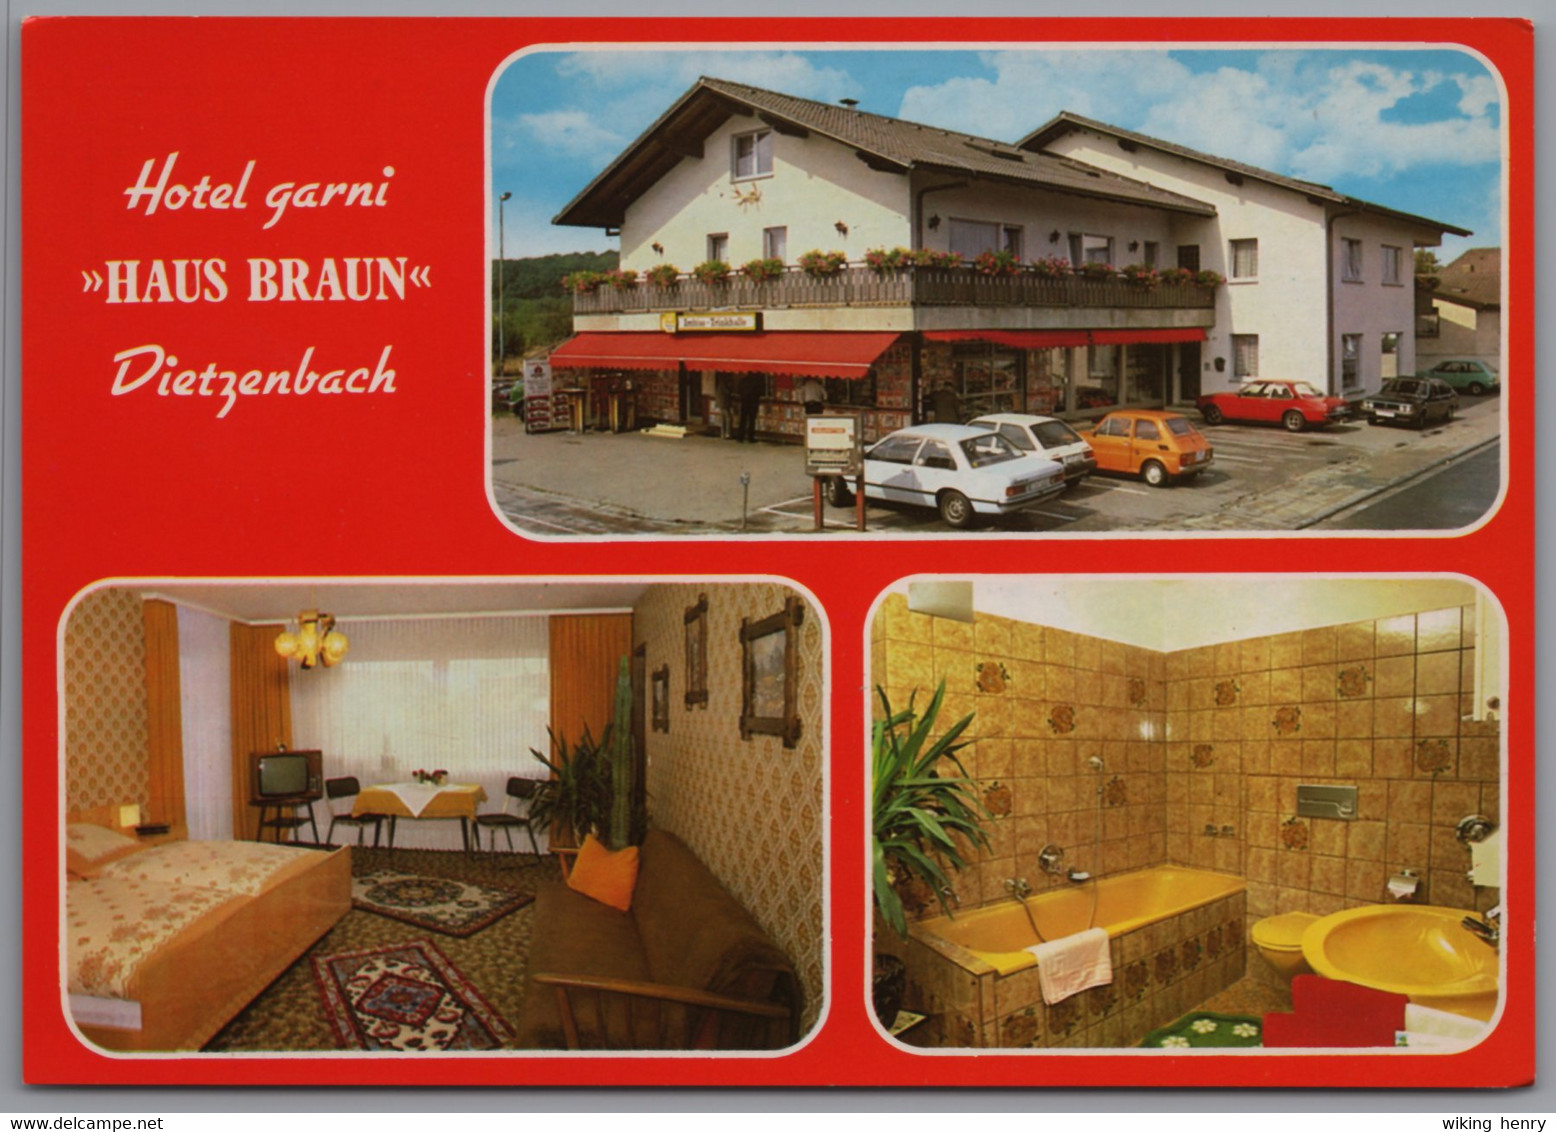 Dietzenbach - Hotel Garni Haus Braun - Dietzenbach